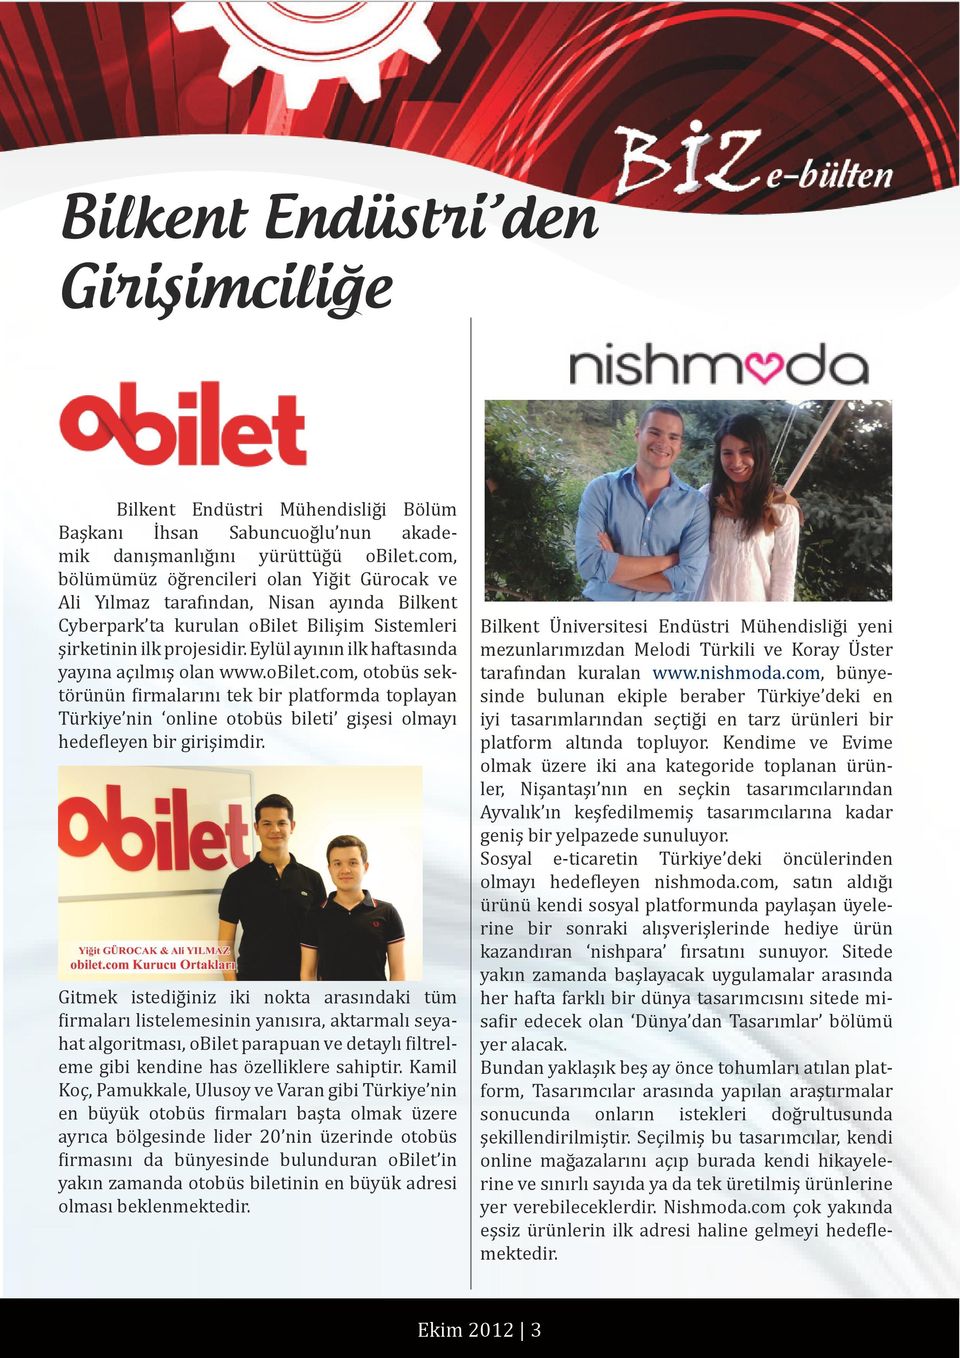 Eylül ayının ilk haftasında yayına açılmış olan www.obilet.com, otobüs sektörünün firmalarını tek bir platformda toplayan Türkiye nin online otobüs bileti gişesi olmayı hedefleyen bir girişimdir.